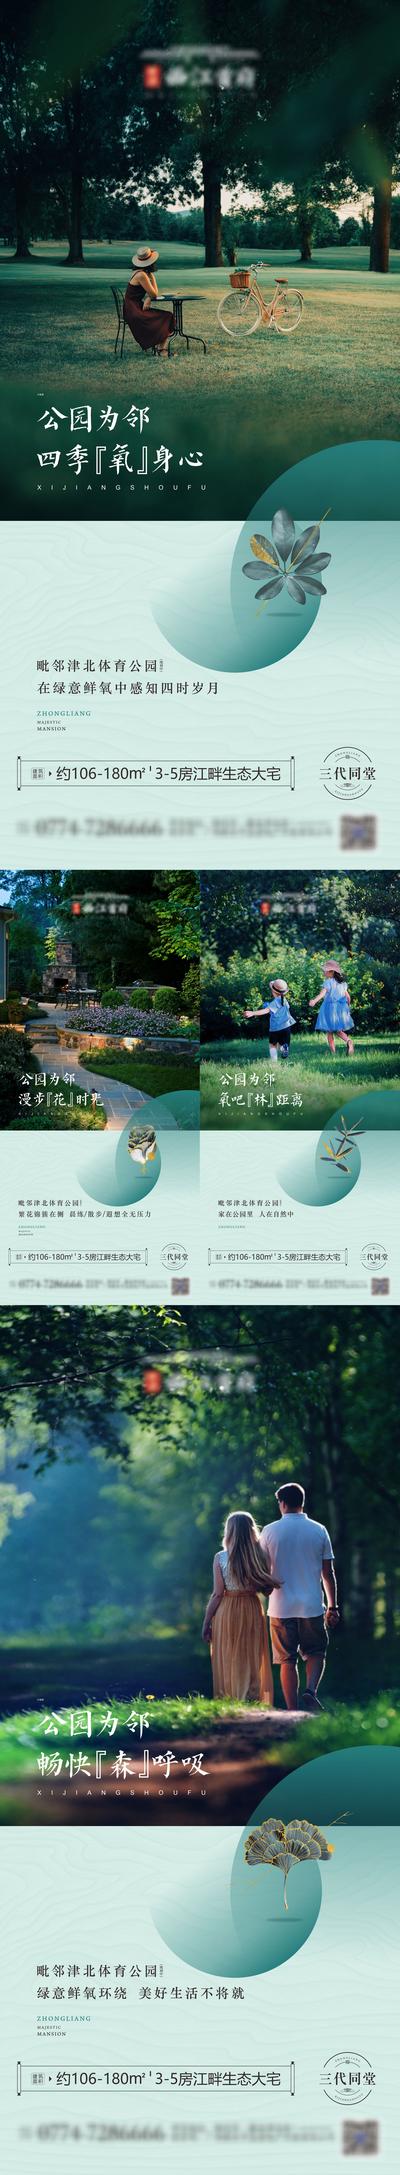 南门网 海报 房地产 公园 园林 温馨 生态 亲子 系列